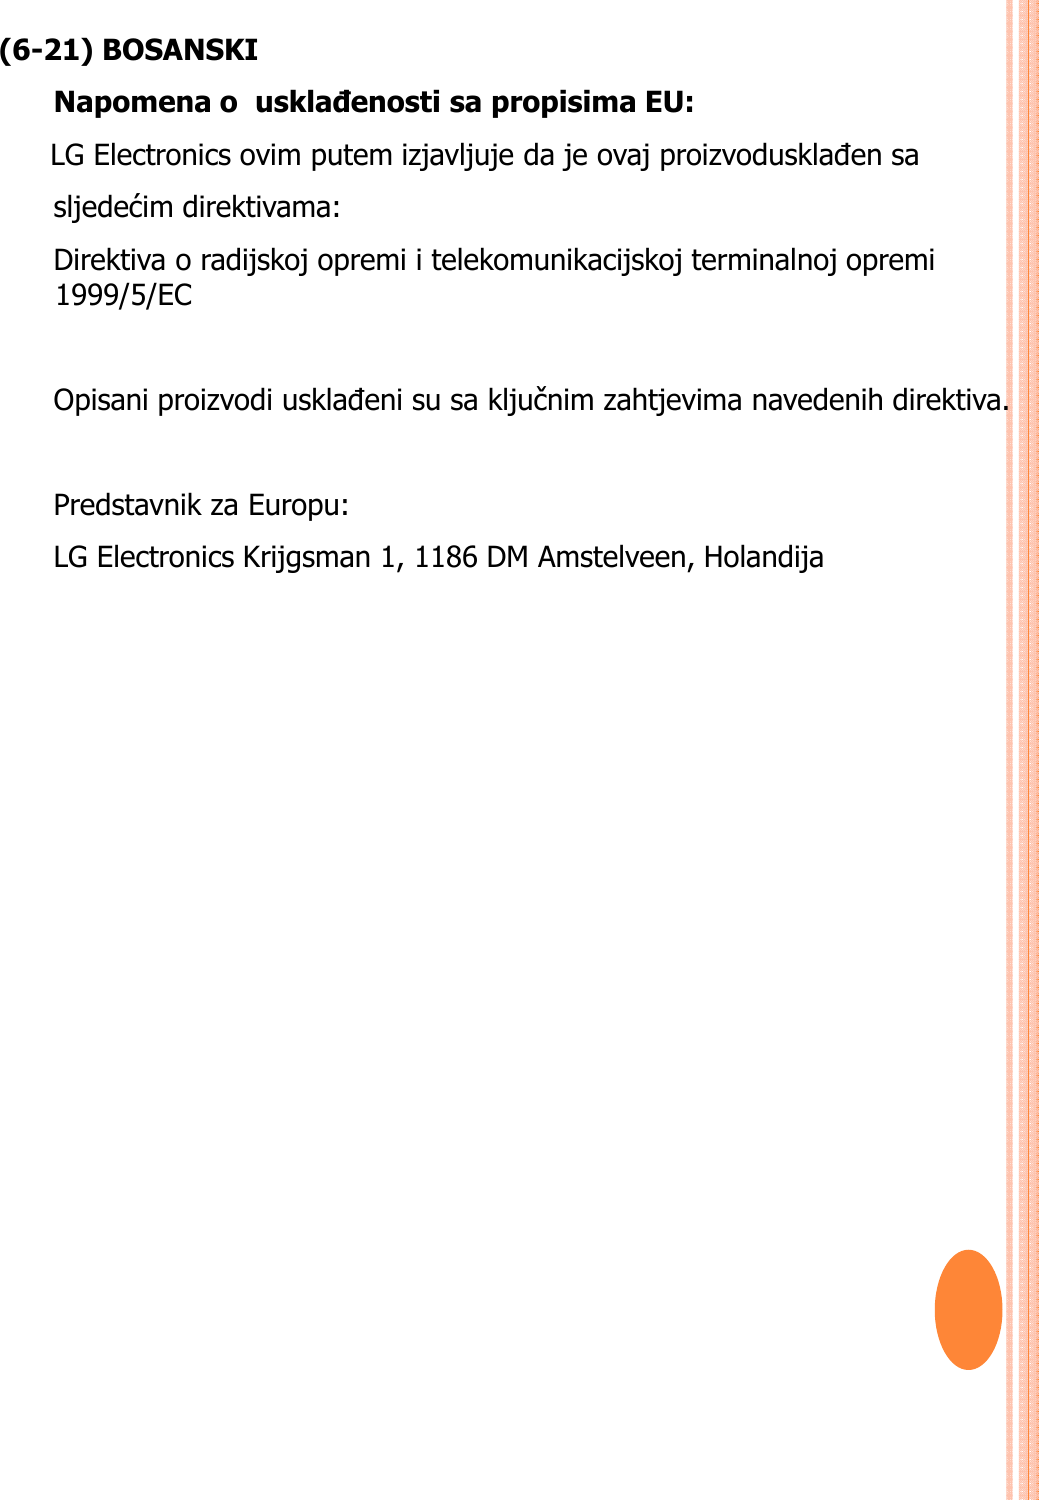 (6-21) BOSANSKINapomena o  usklađenosti sa propisima EU:  LG Electronics ovim putem izjavljuje da je ovaj proizvodusklađen sa sljedećim direktivama: Direktiva o radijskoj opremi i telekomunikacijskoj terminalnoj opremi 1999/5/EC Opisani proizvodi usklađeni su sa ključnim zahtjevima navedenih direktiva.Predstavnik za Europu: LG Electronics Krijgsman 1, 1186 DM Amstelveen, Holandija